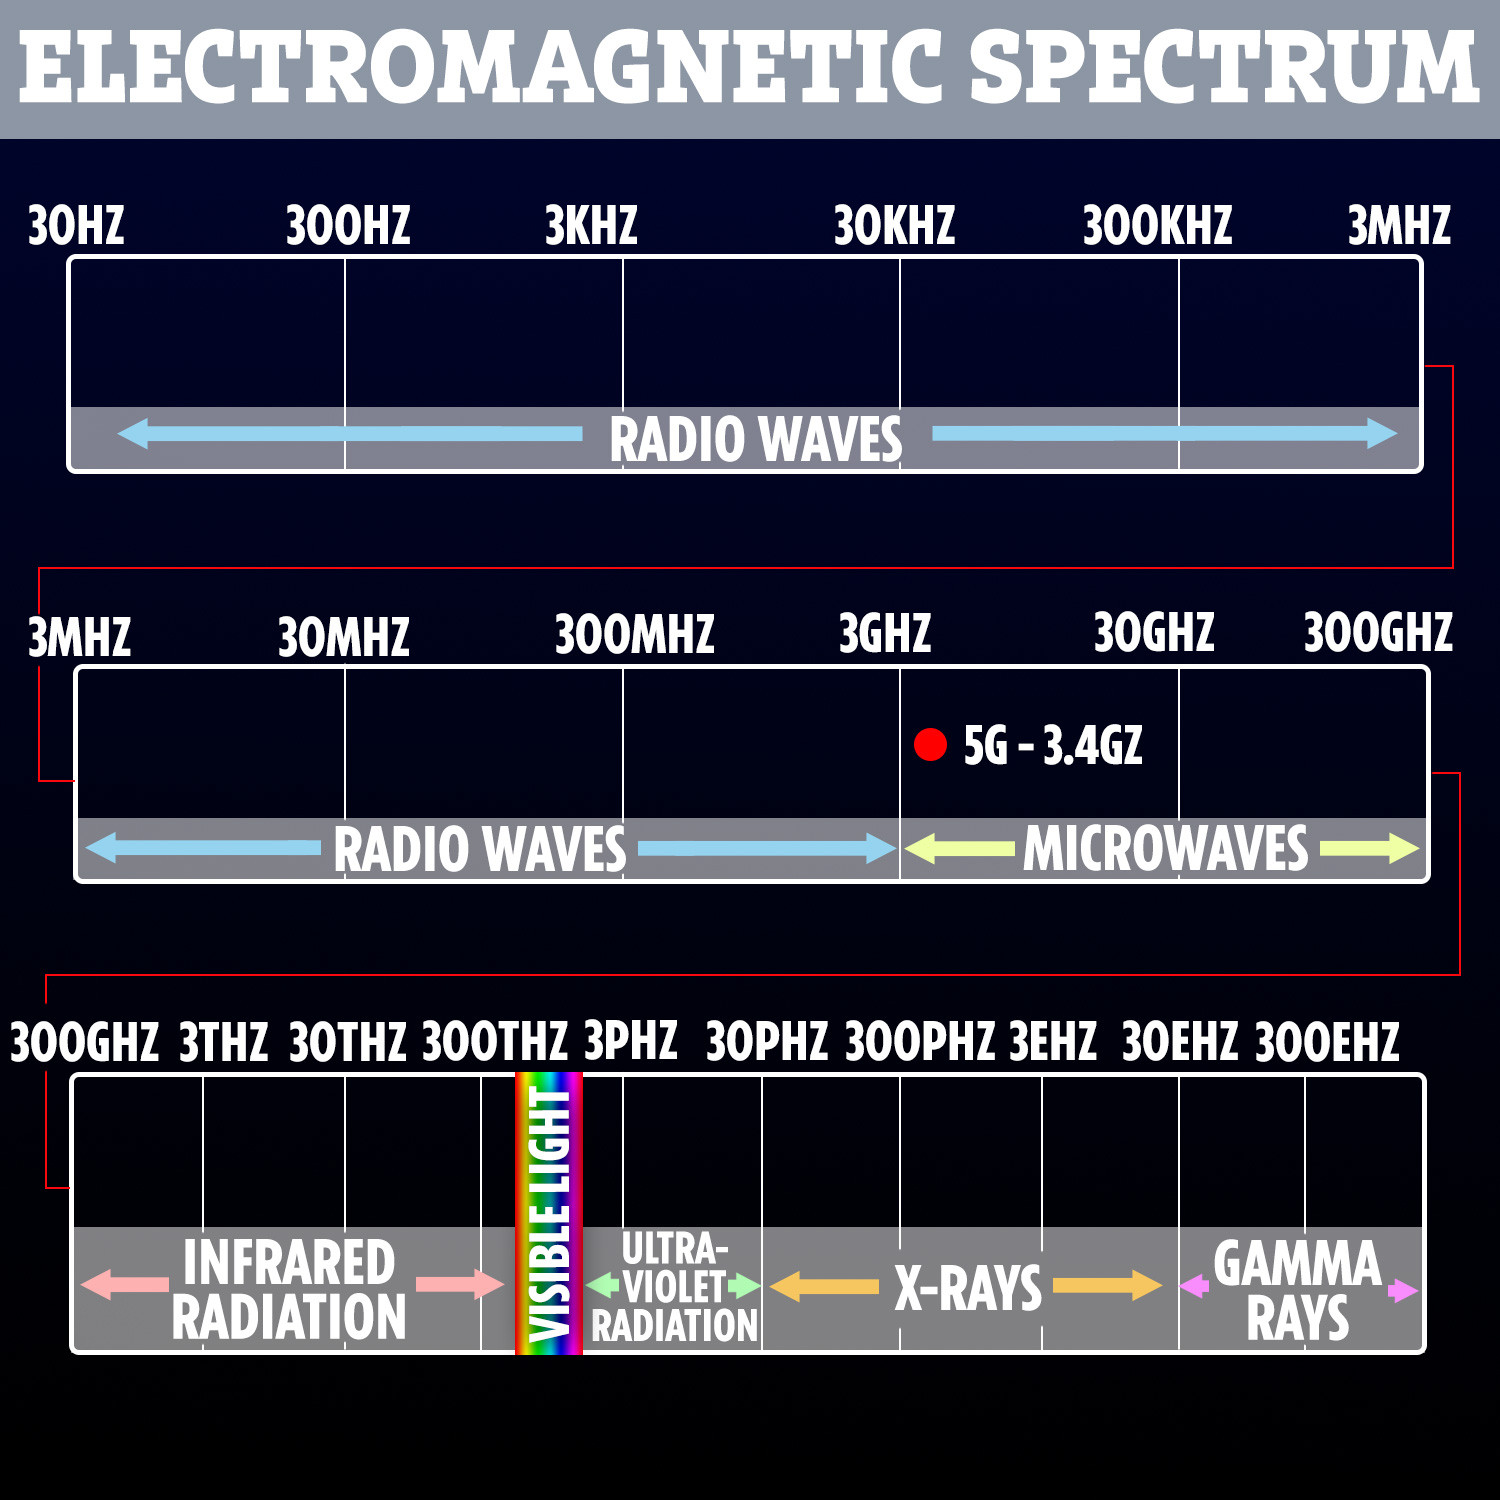  5G adalah bentuk radiasi frekuensi sangat rendah, jauh di bawah sinar tampak dan inframerah